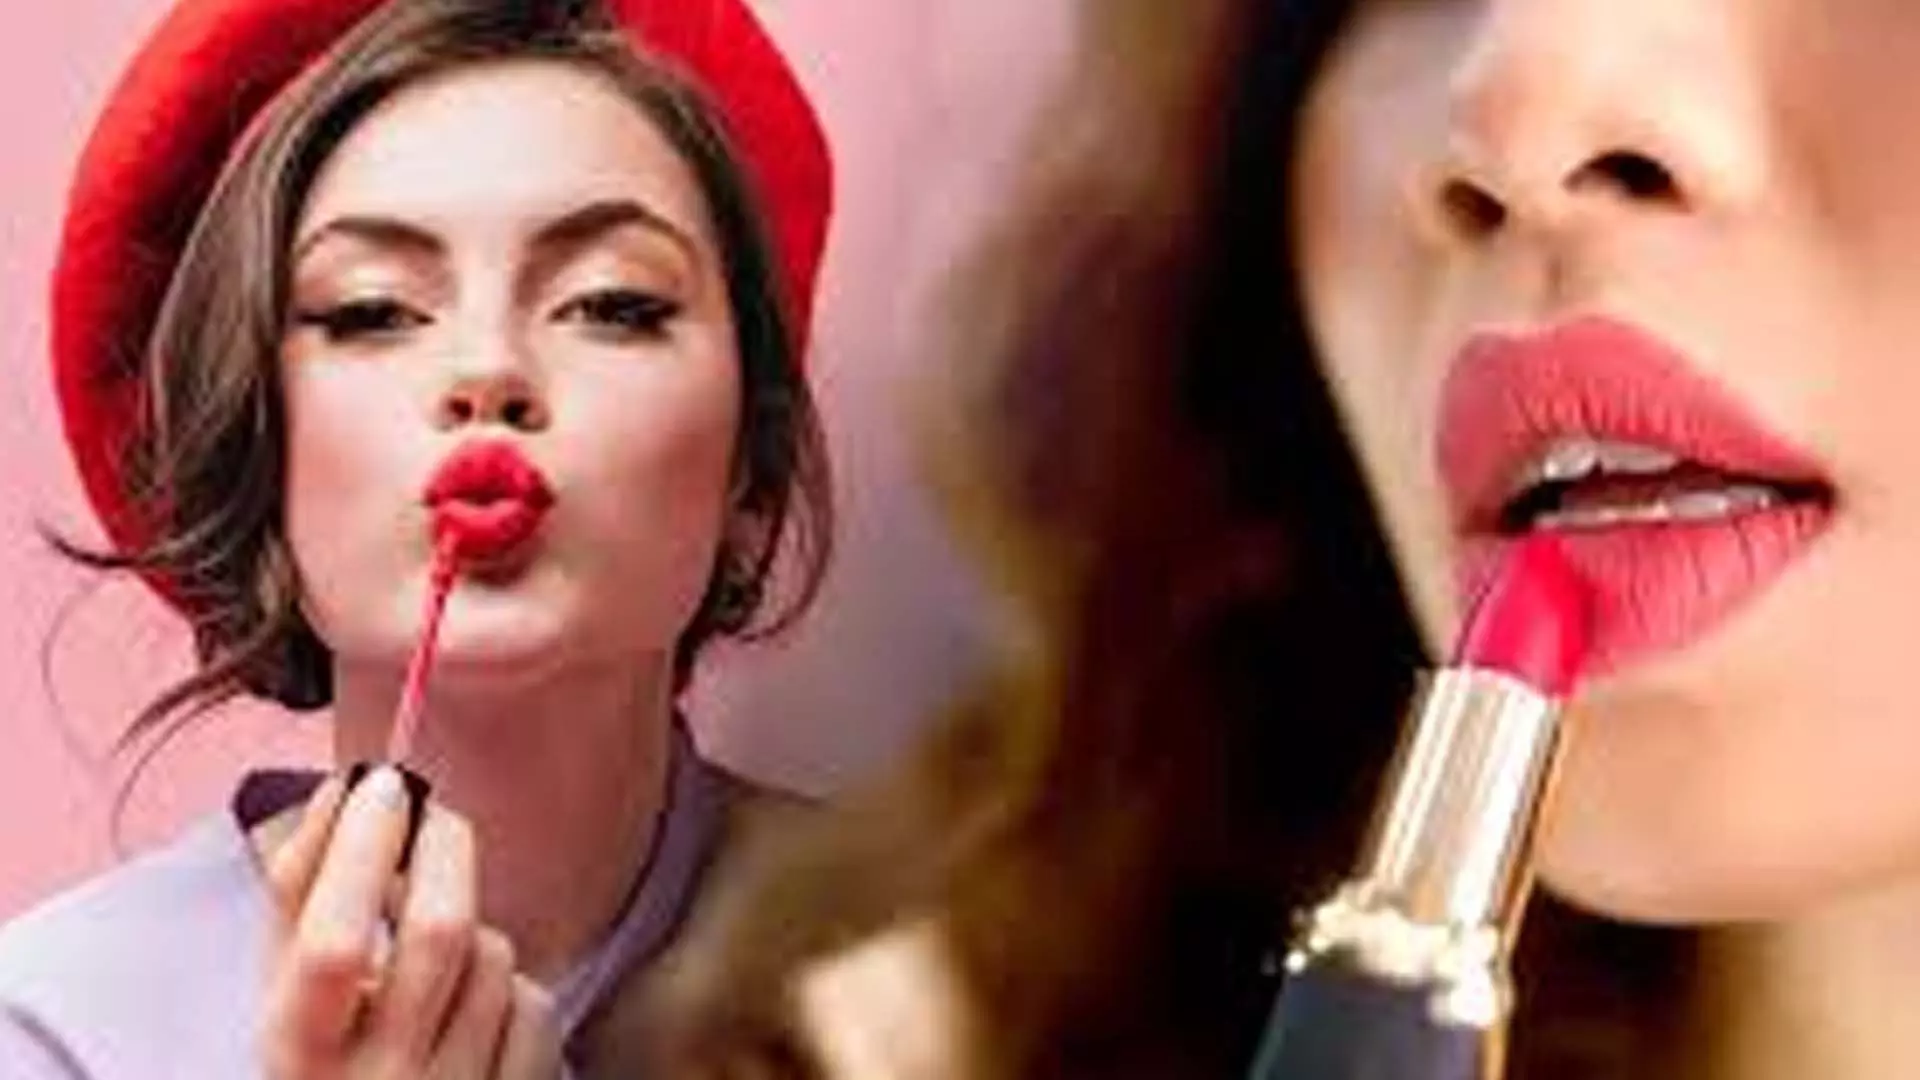 Lipstick: खूबसूरती बढ़ने वाली लिपस्टिक सेहत के लिए बन सकती है जानलेवा